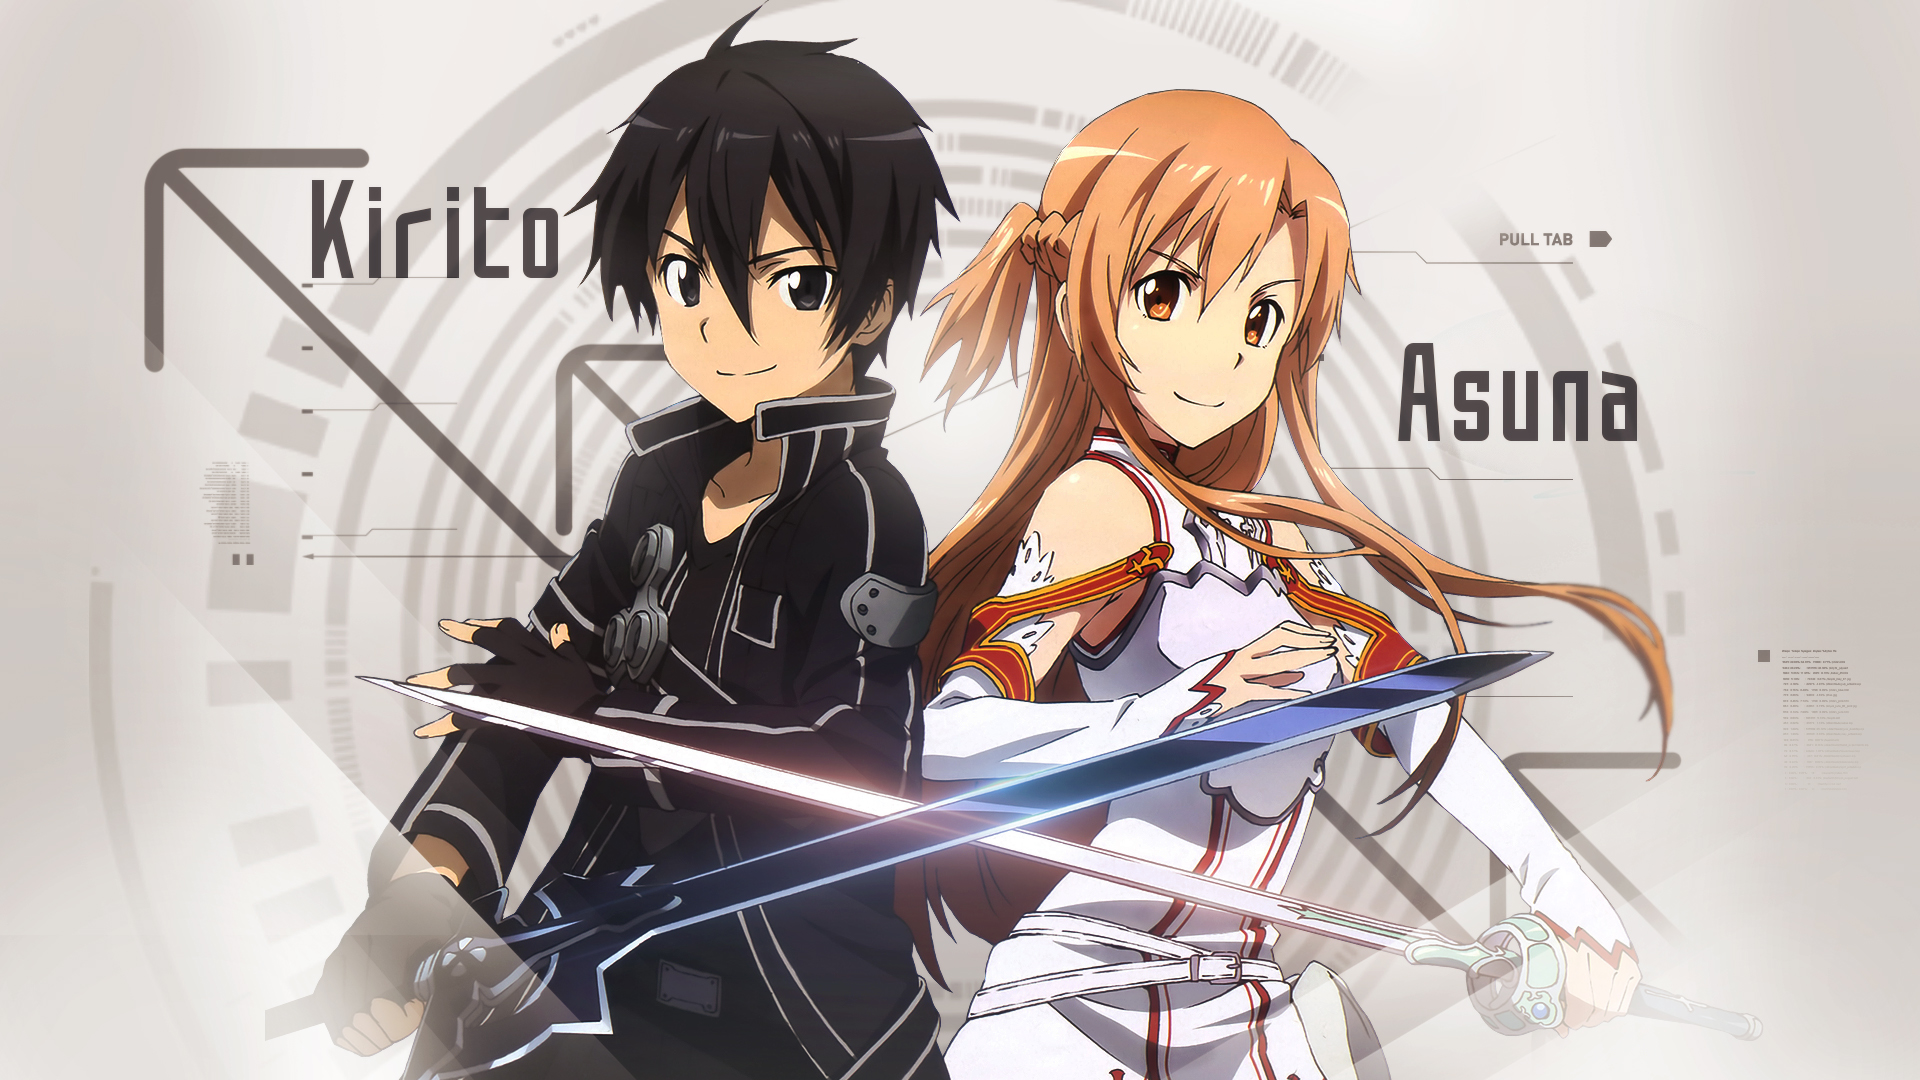 Anime Sword Art Online HD Wallpaper by Tammypain